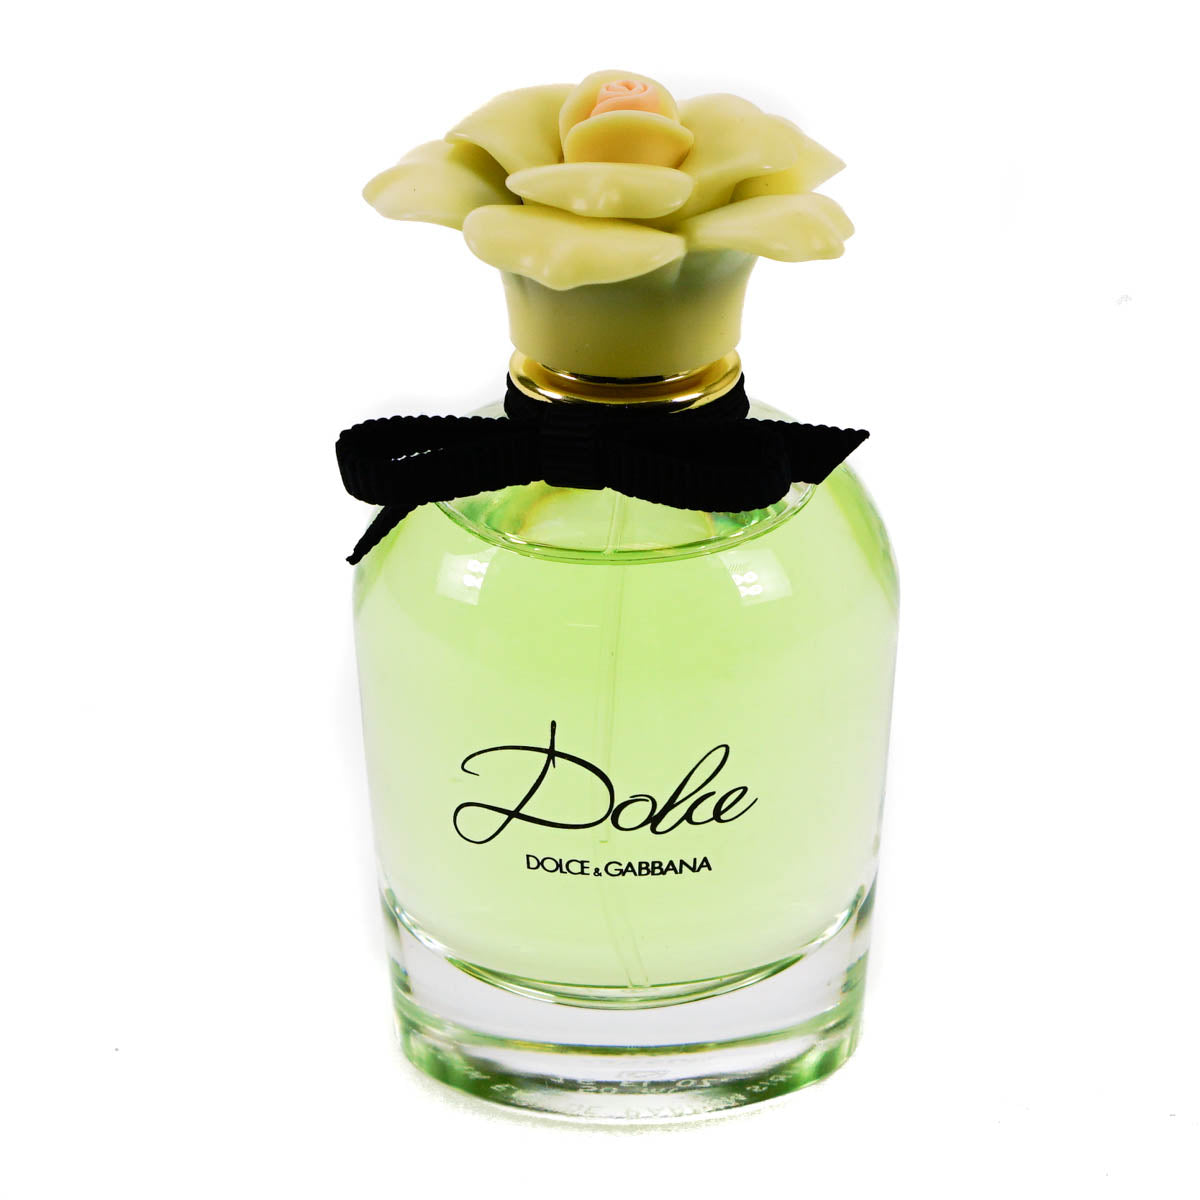 Dolce & Gabbana Dolce 50ml Eau De Parfum